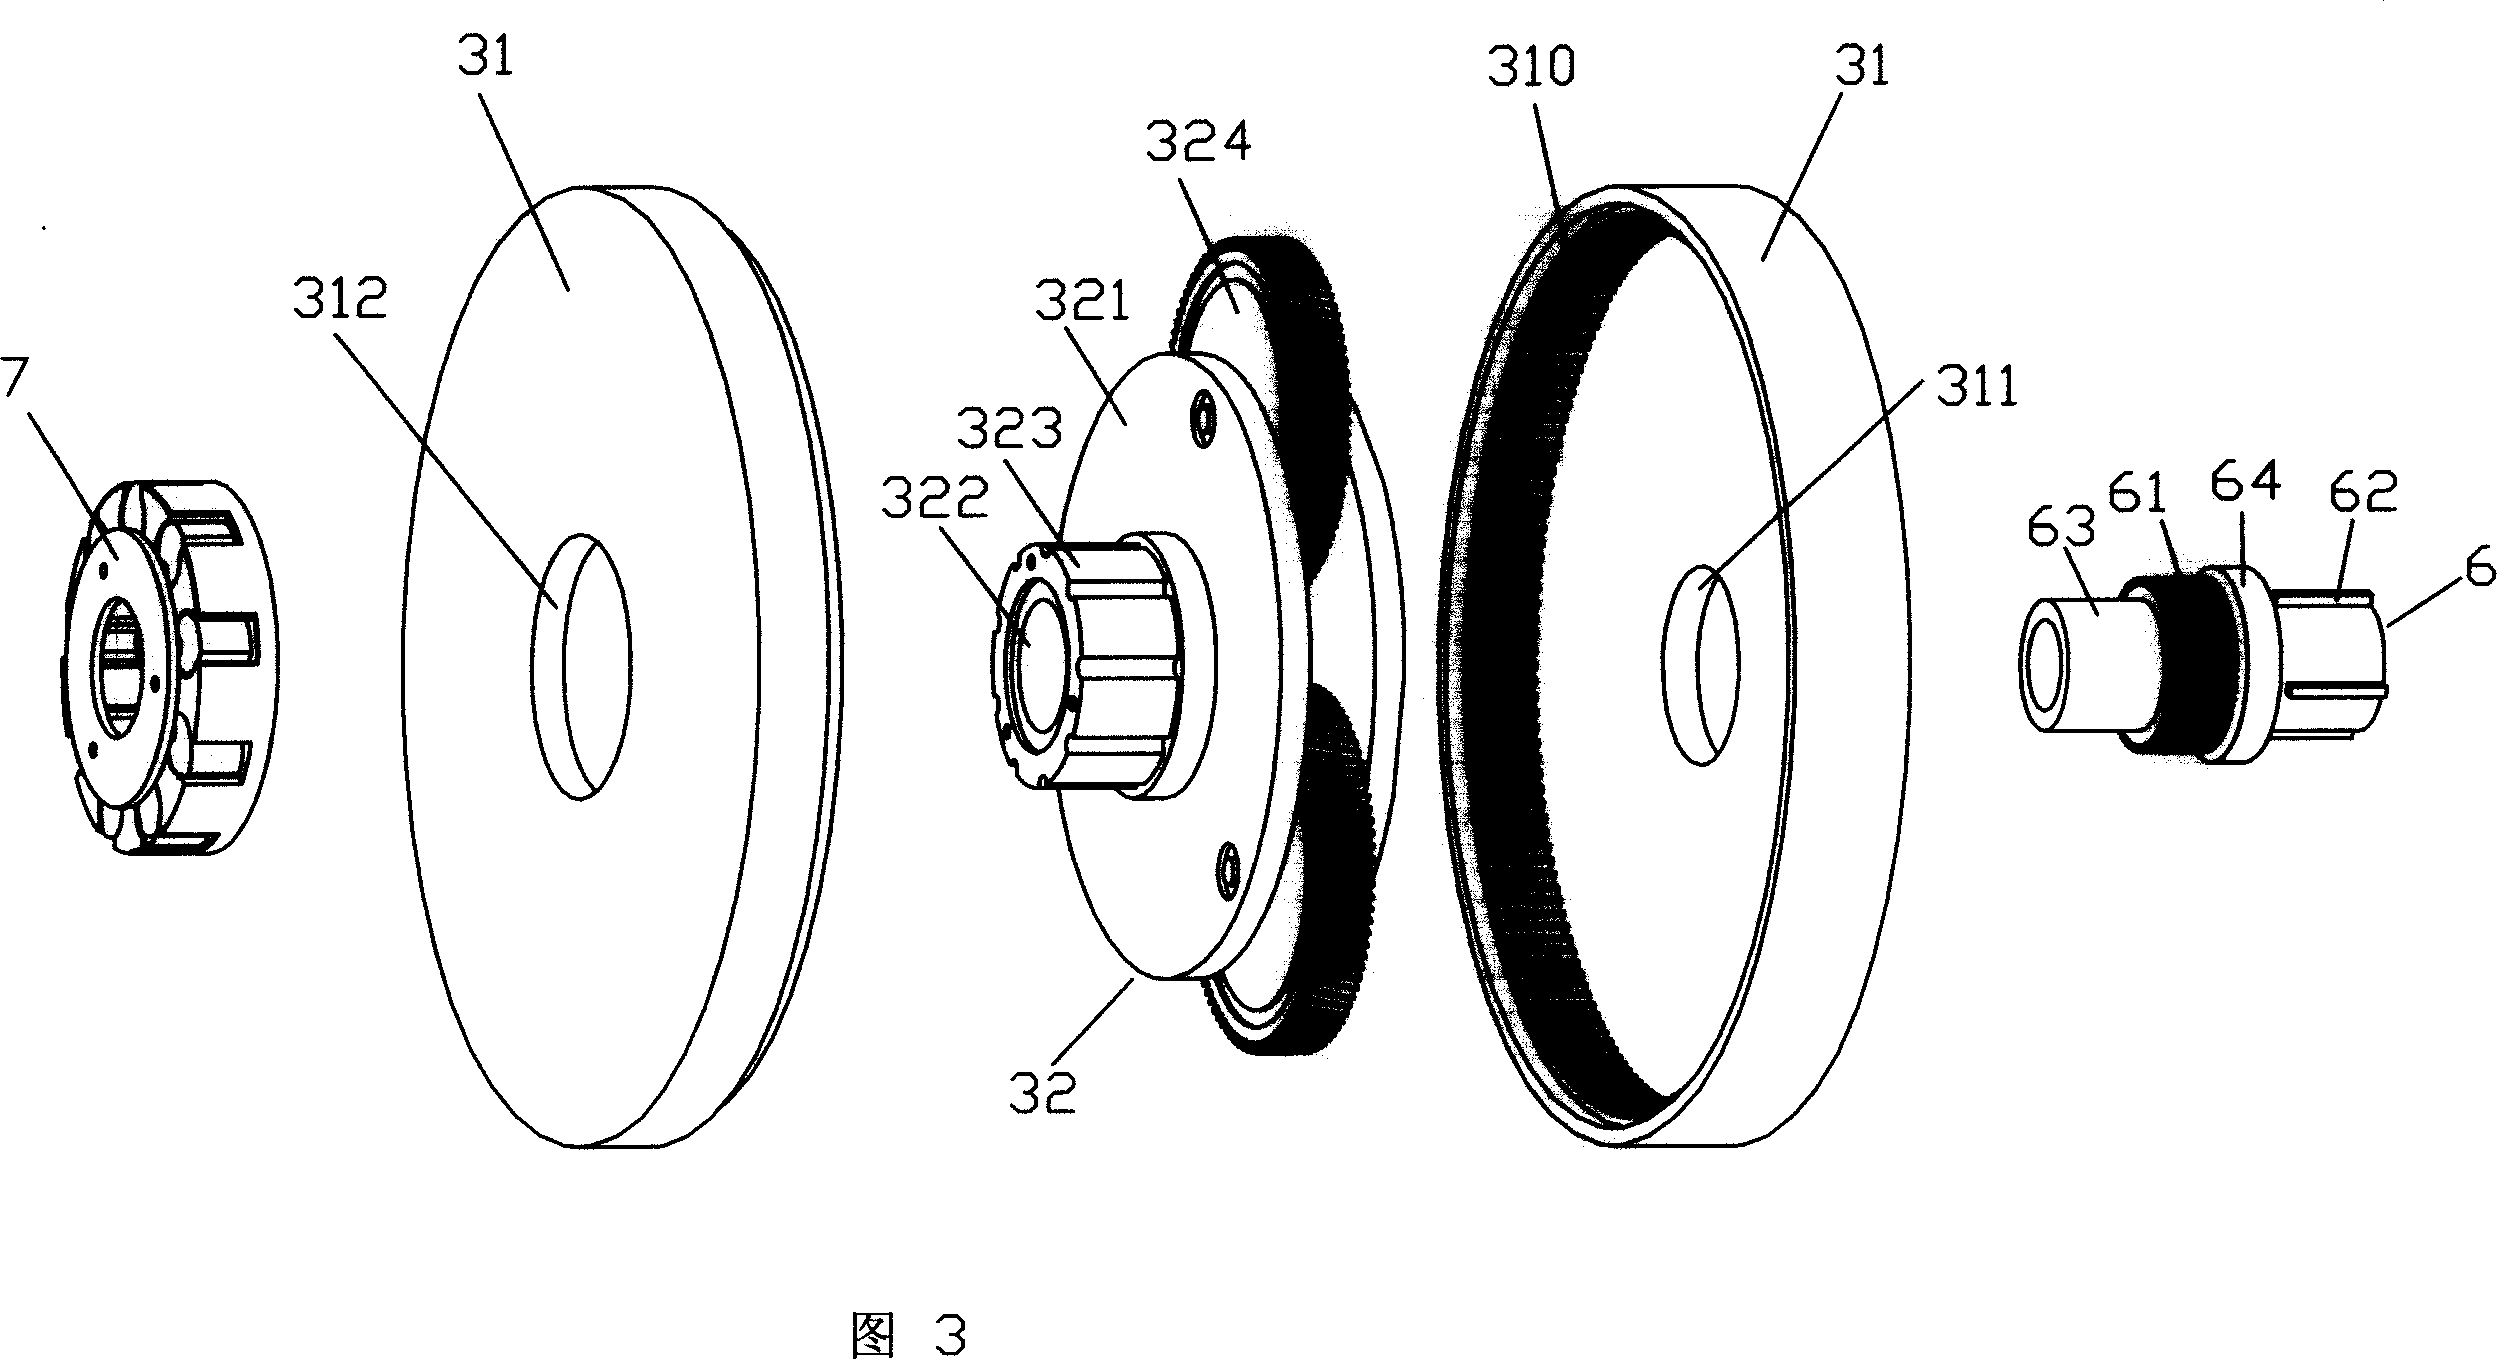 An electromotive wheel hub electromotor